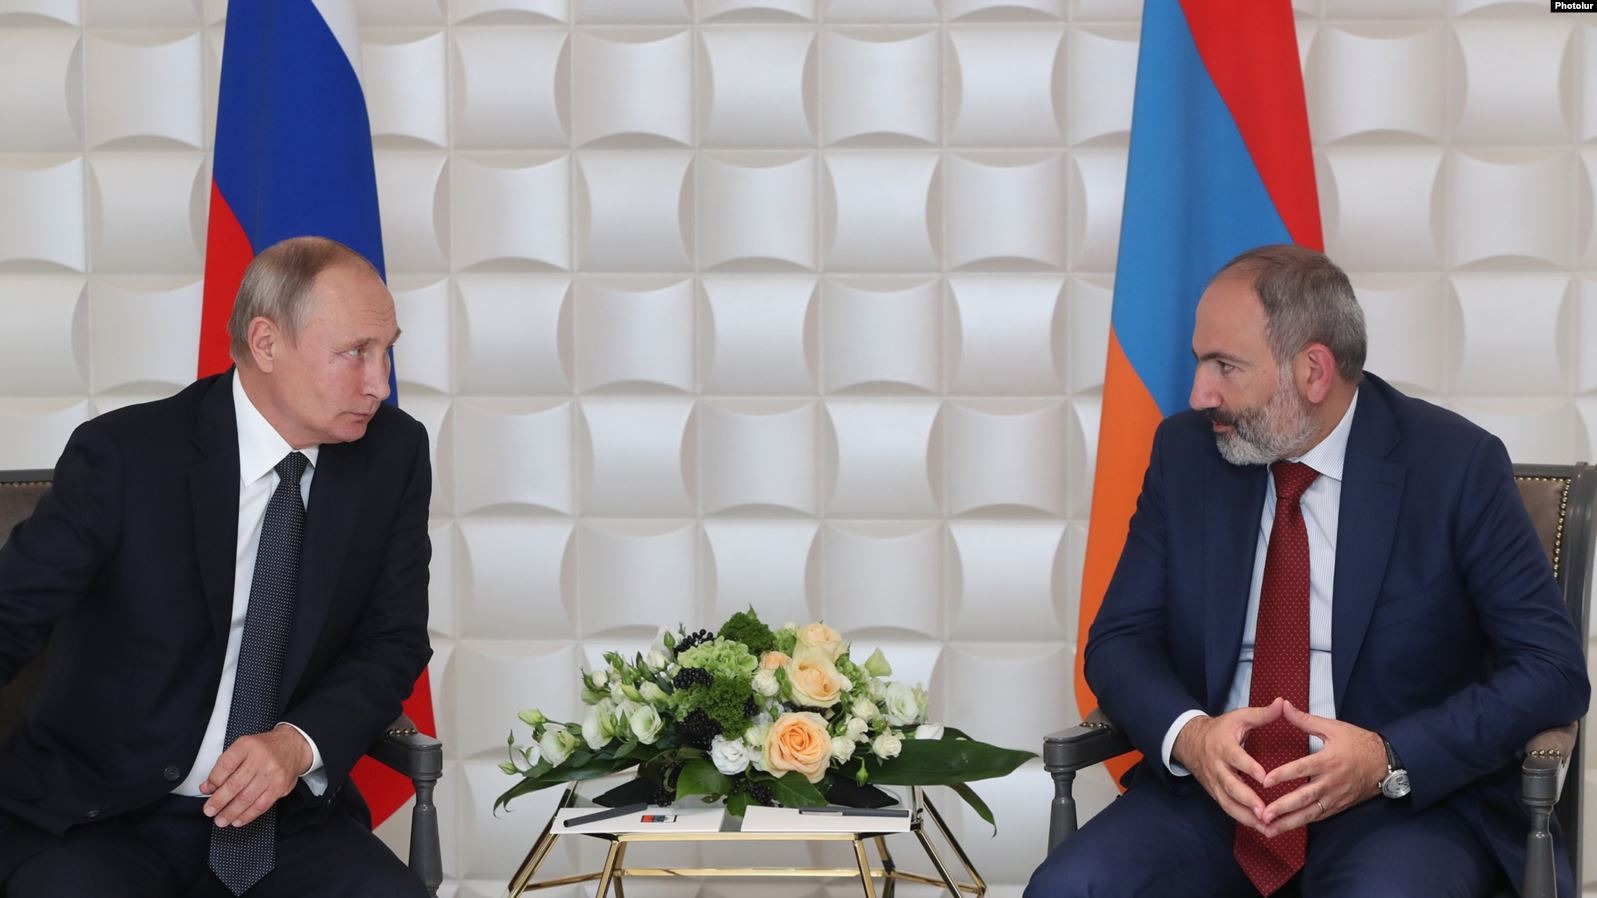 Пашинян обратился к Путину за незамедлительным проведением консультаций по договору от 1997г